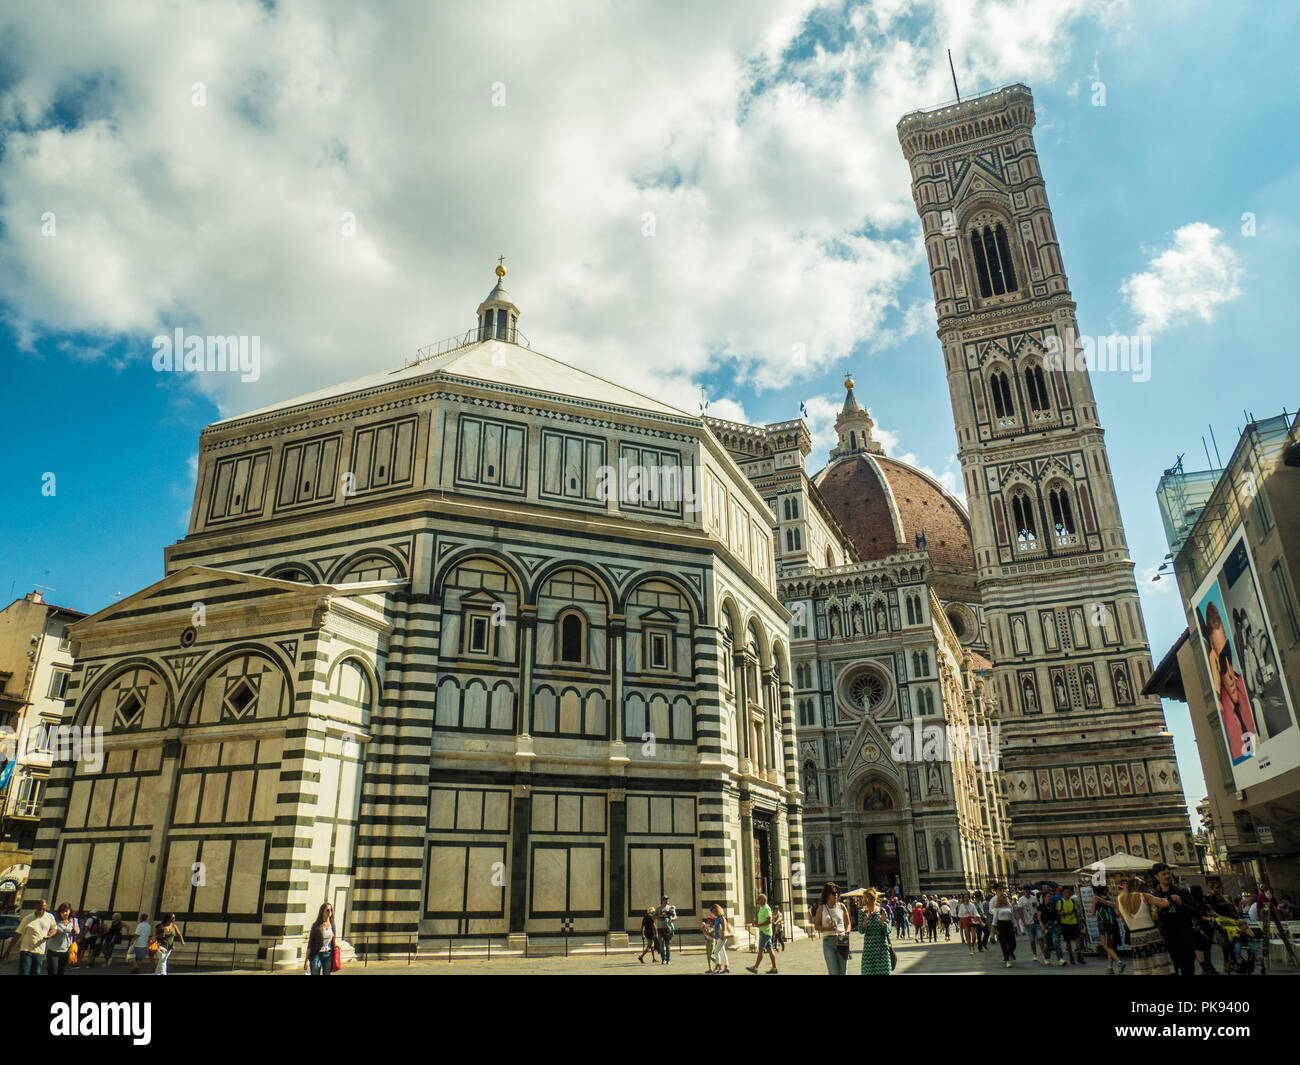 Florencia con el Bapistery de San Juan y La Catedral de Santa Maria del Fiore (detrás), Toscana, Italia Foto de stock